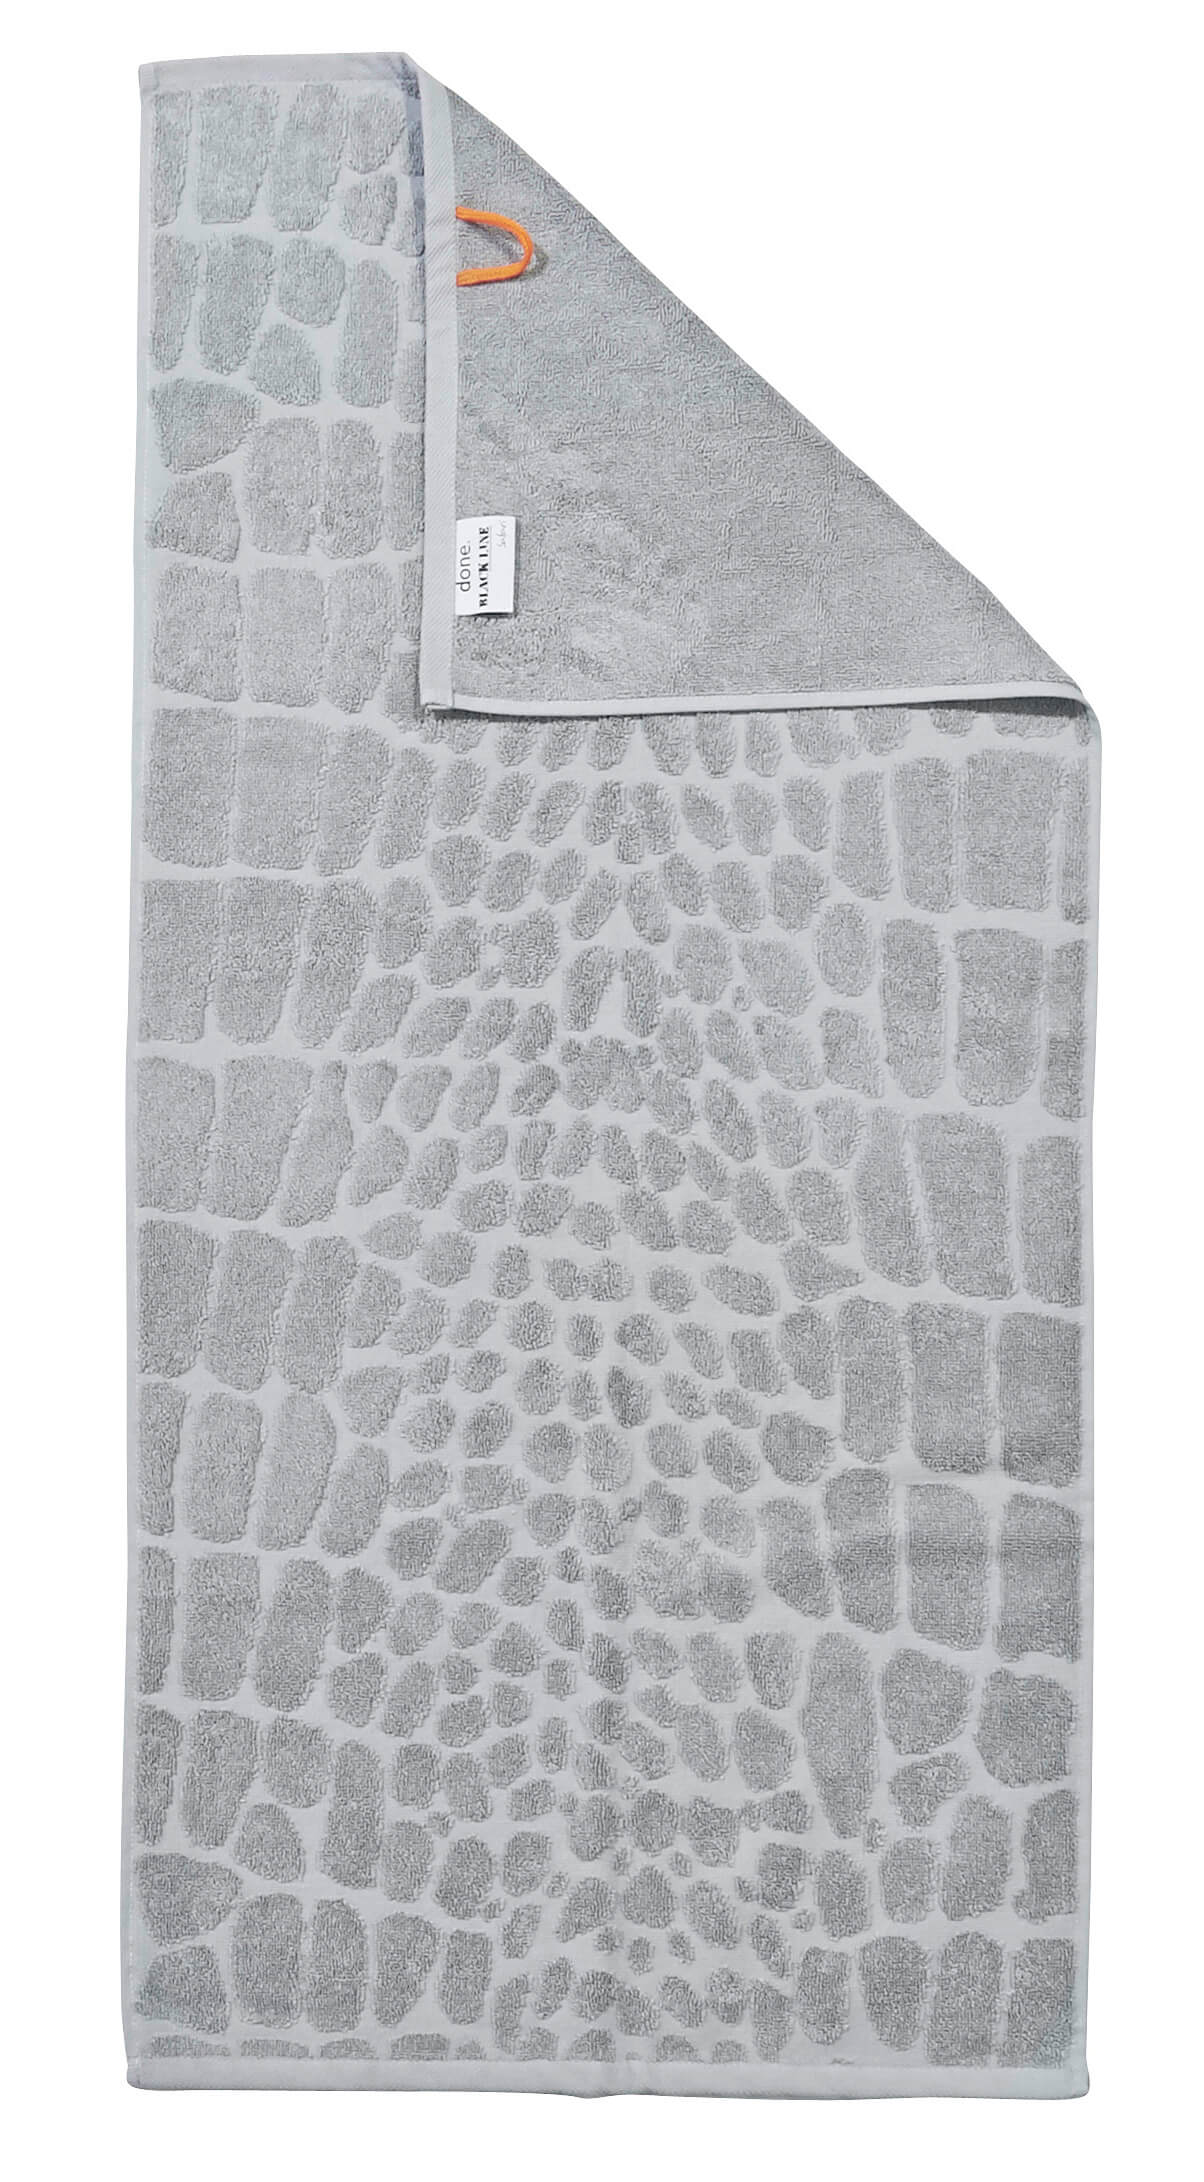 Полотенце из 100% хлопка Black Line Croco Silver ☞ Размер: 50 x 100 см